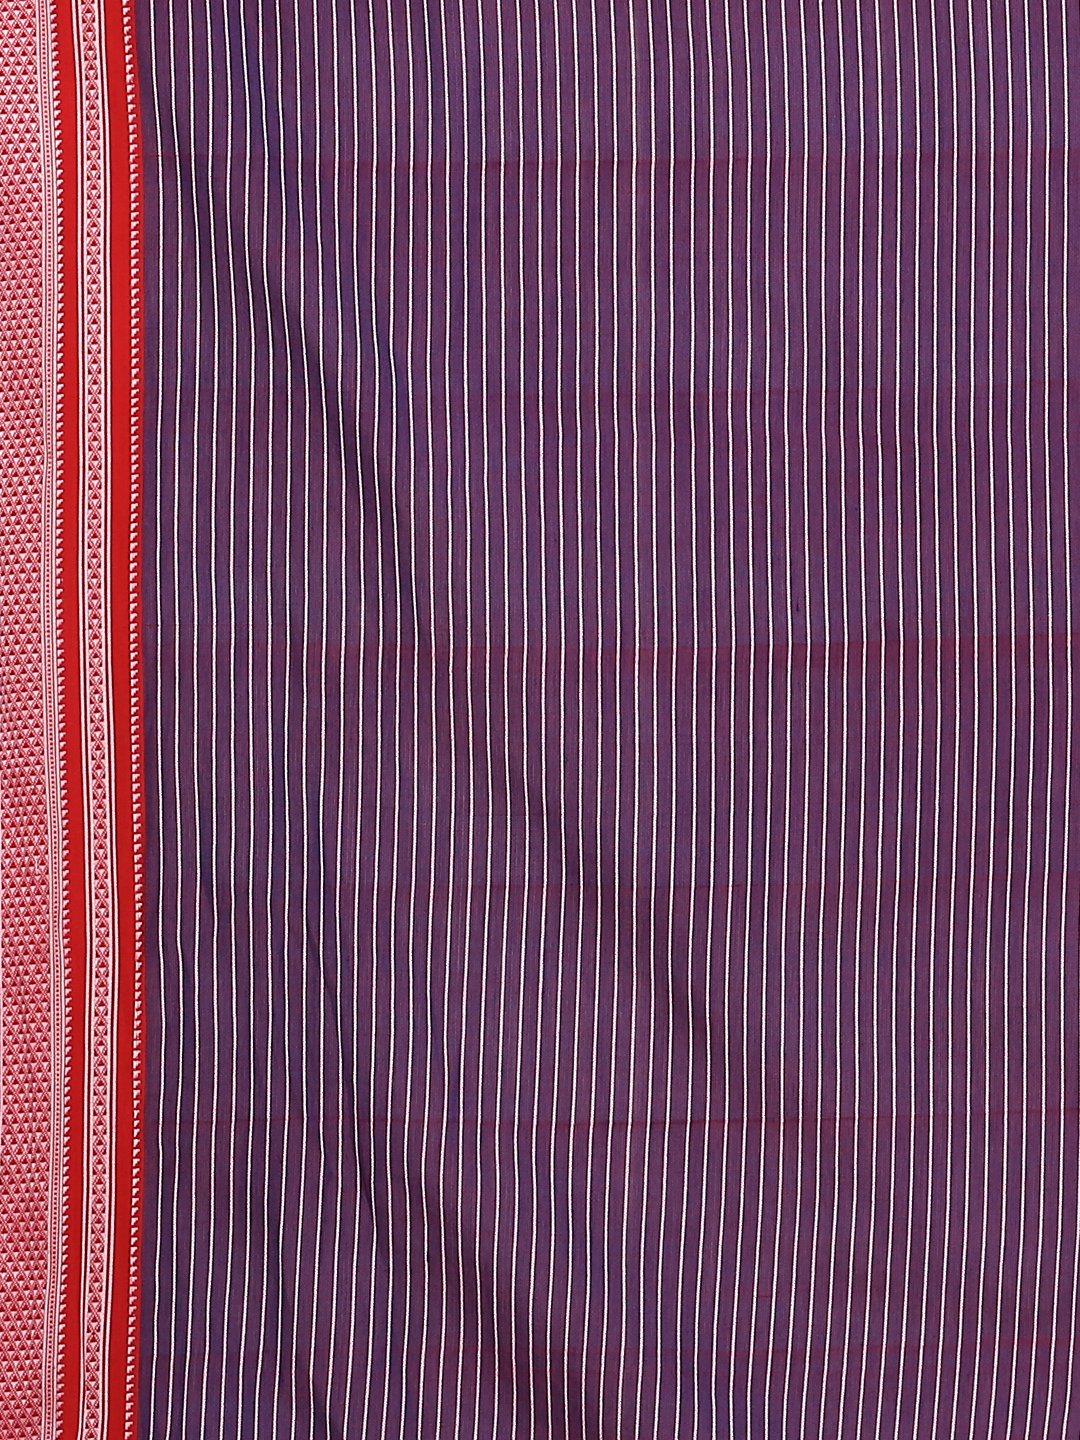 White striped blue ilkal cotton saree